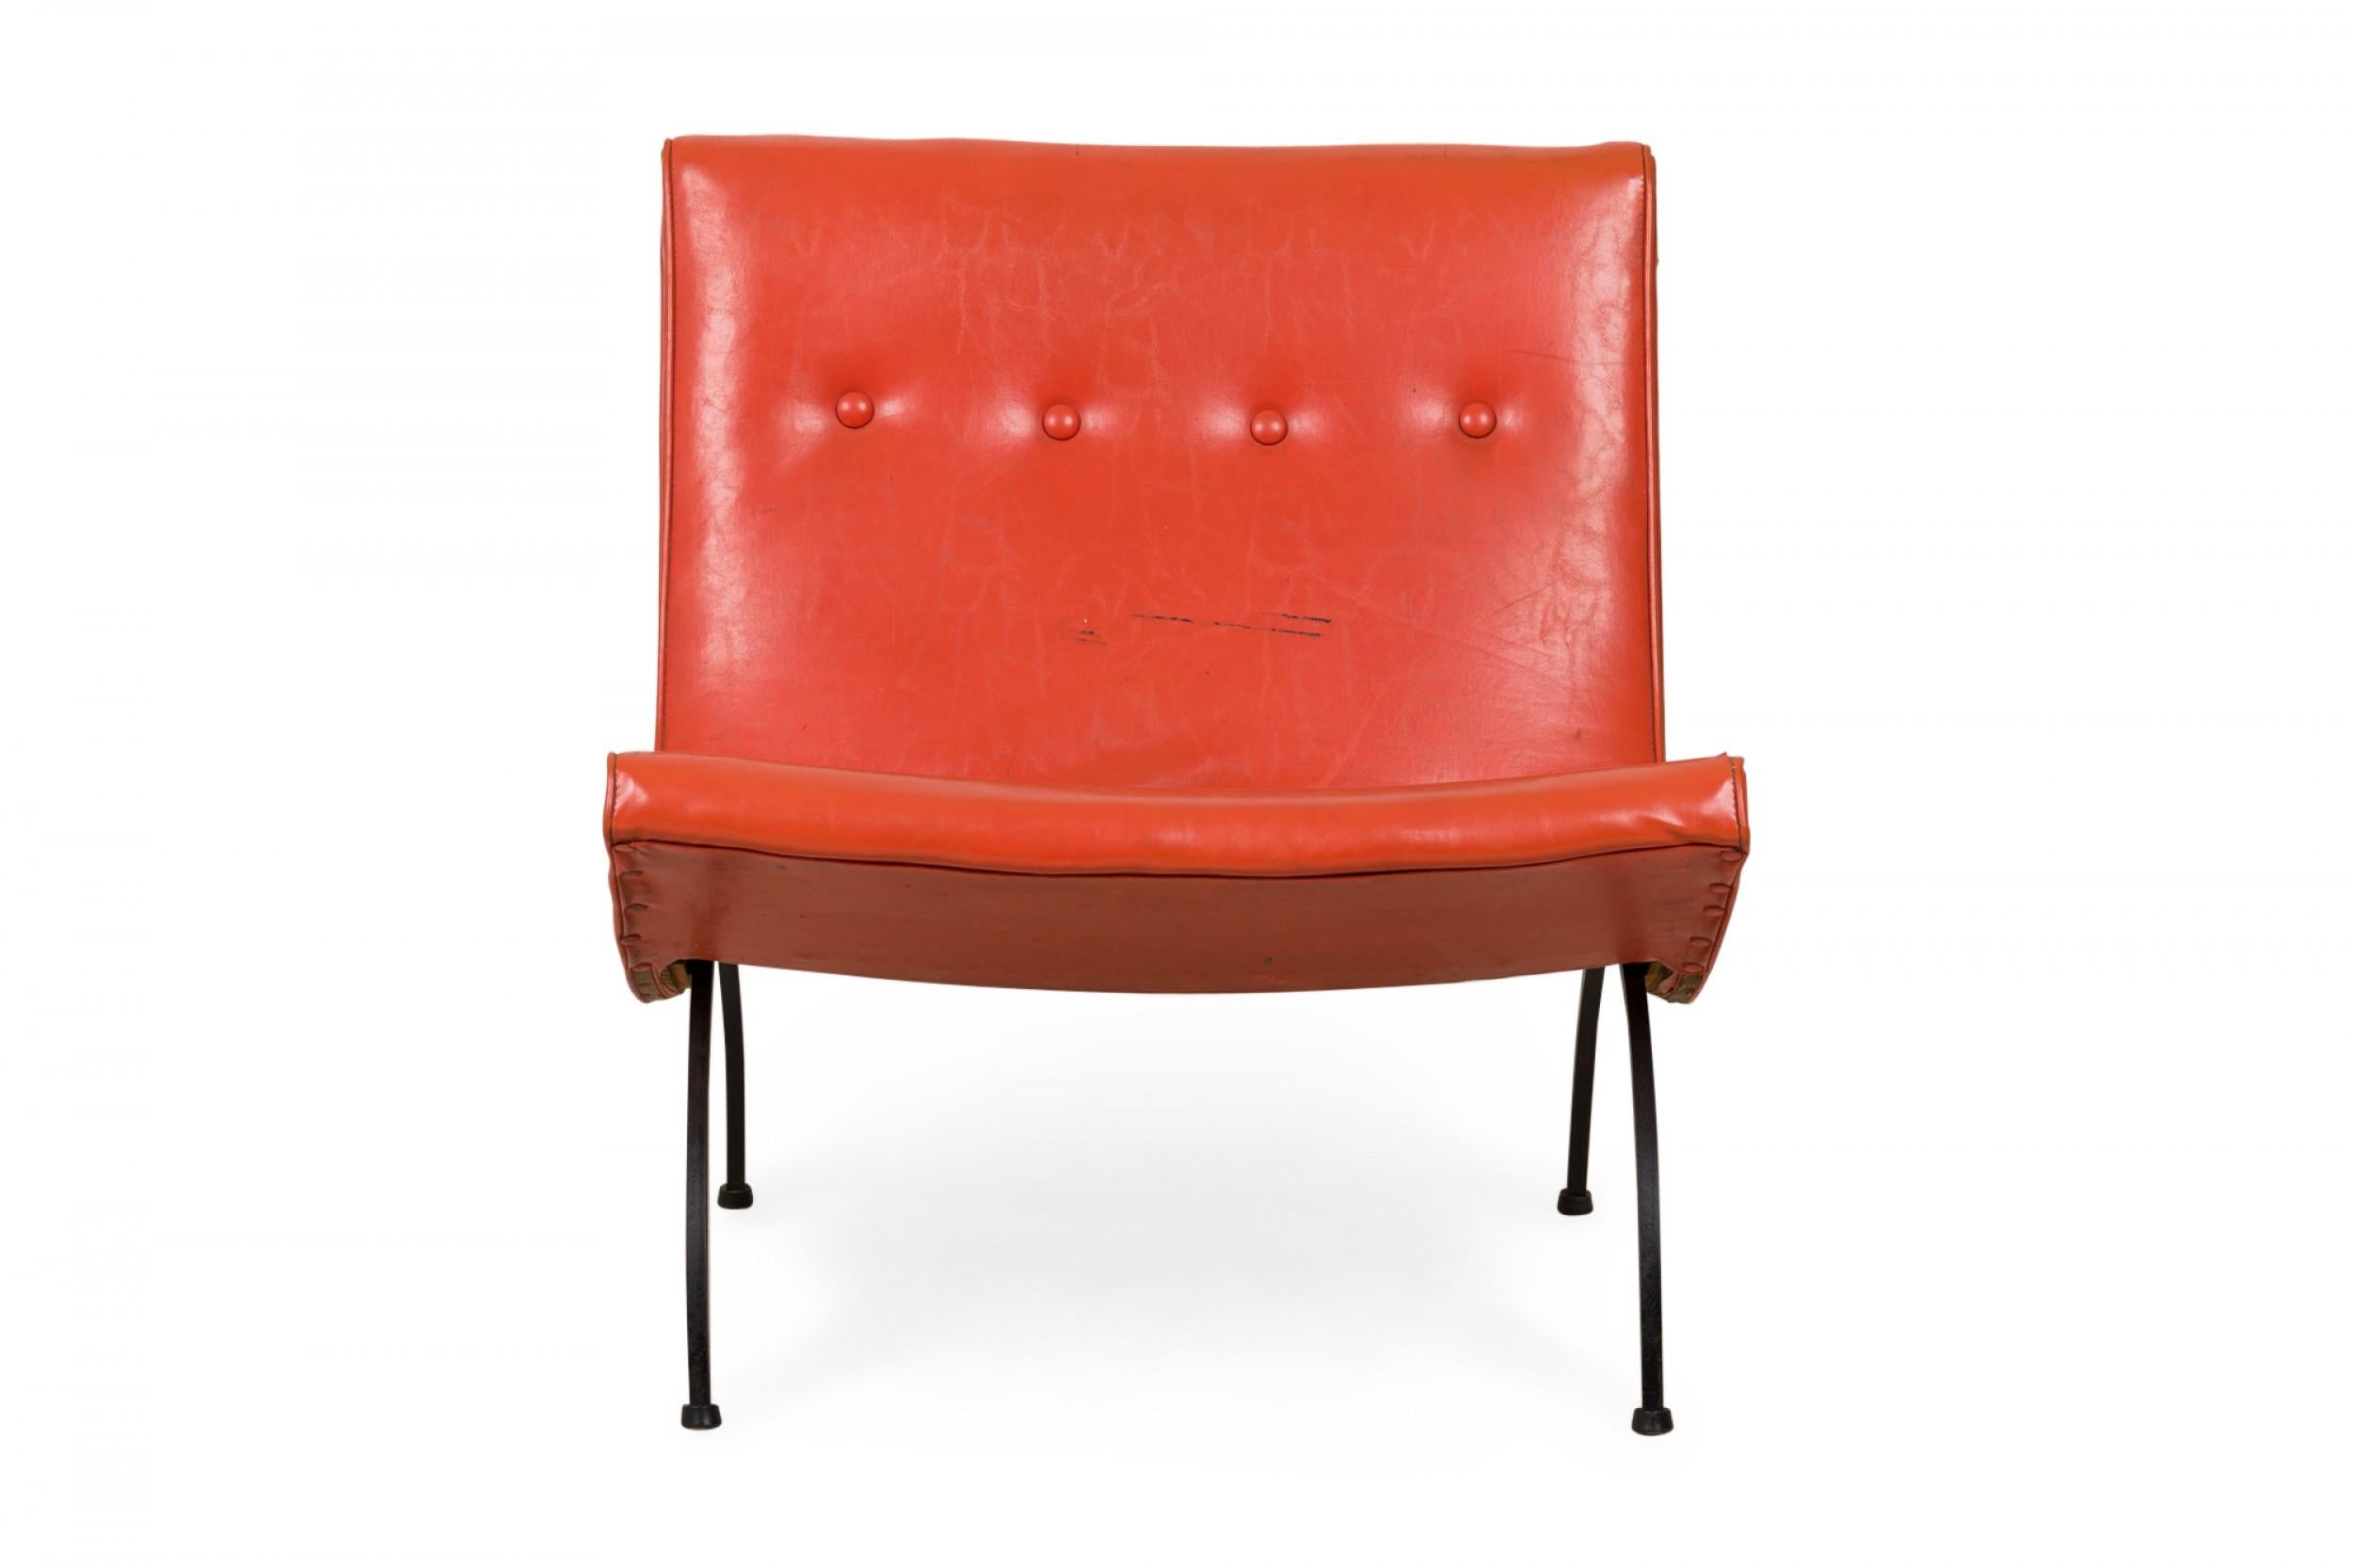 Amerikanischer Slipper / Beistellstuhl aus der Mitte des Jahrhunderts mit orangefarbener Vinylpolsterung mit Knopftuft, der auf vier geschwungenen schmiedeeisernen Beinen ruht, die in kleinen runden Füßen enden. (Milo Baughman).
     